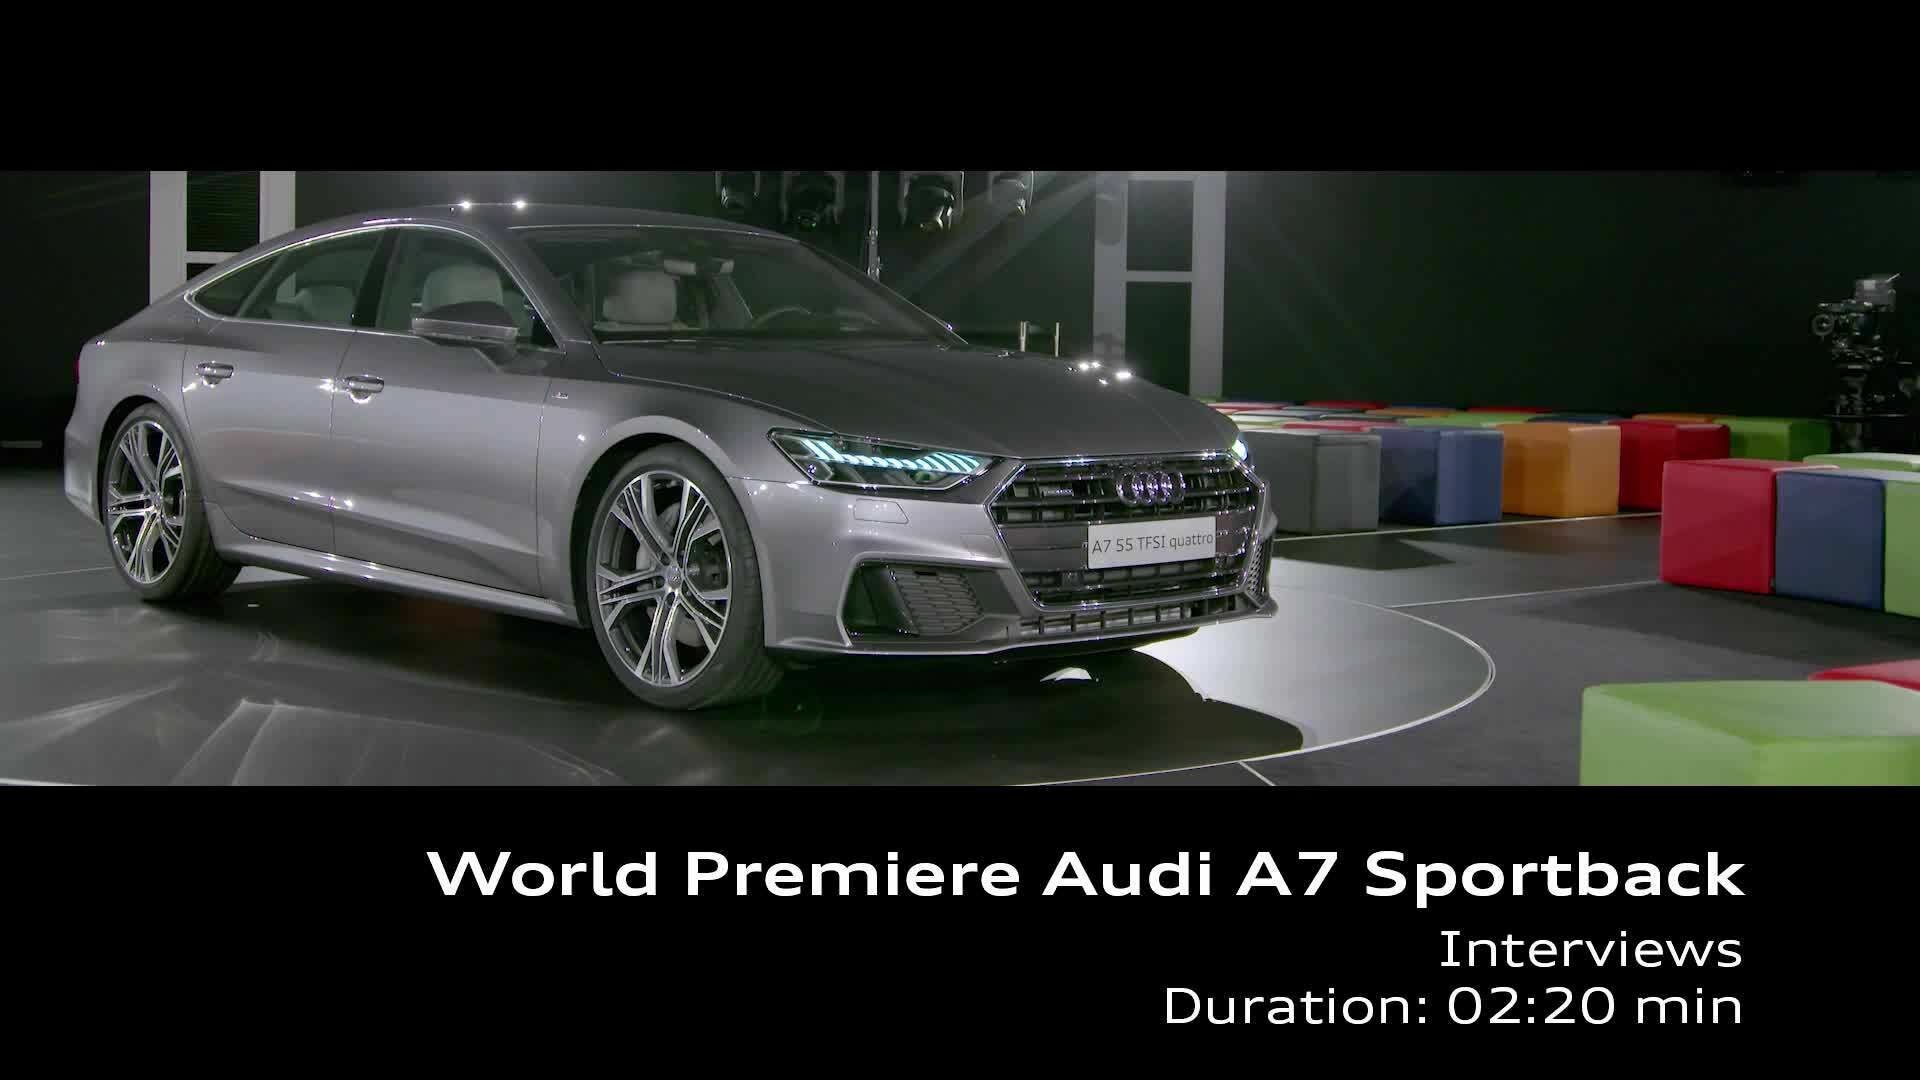 Audi A7 world premiere interviews Stadler, Mertens, Lichte